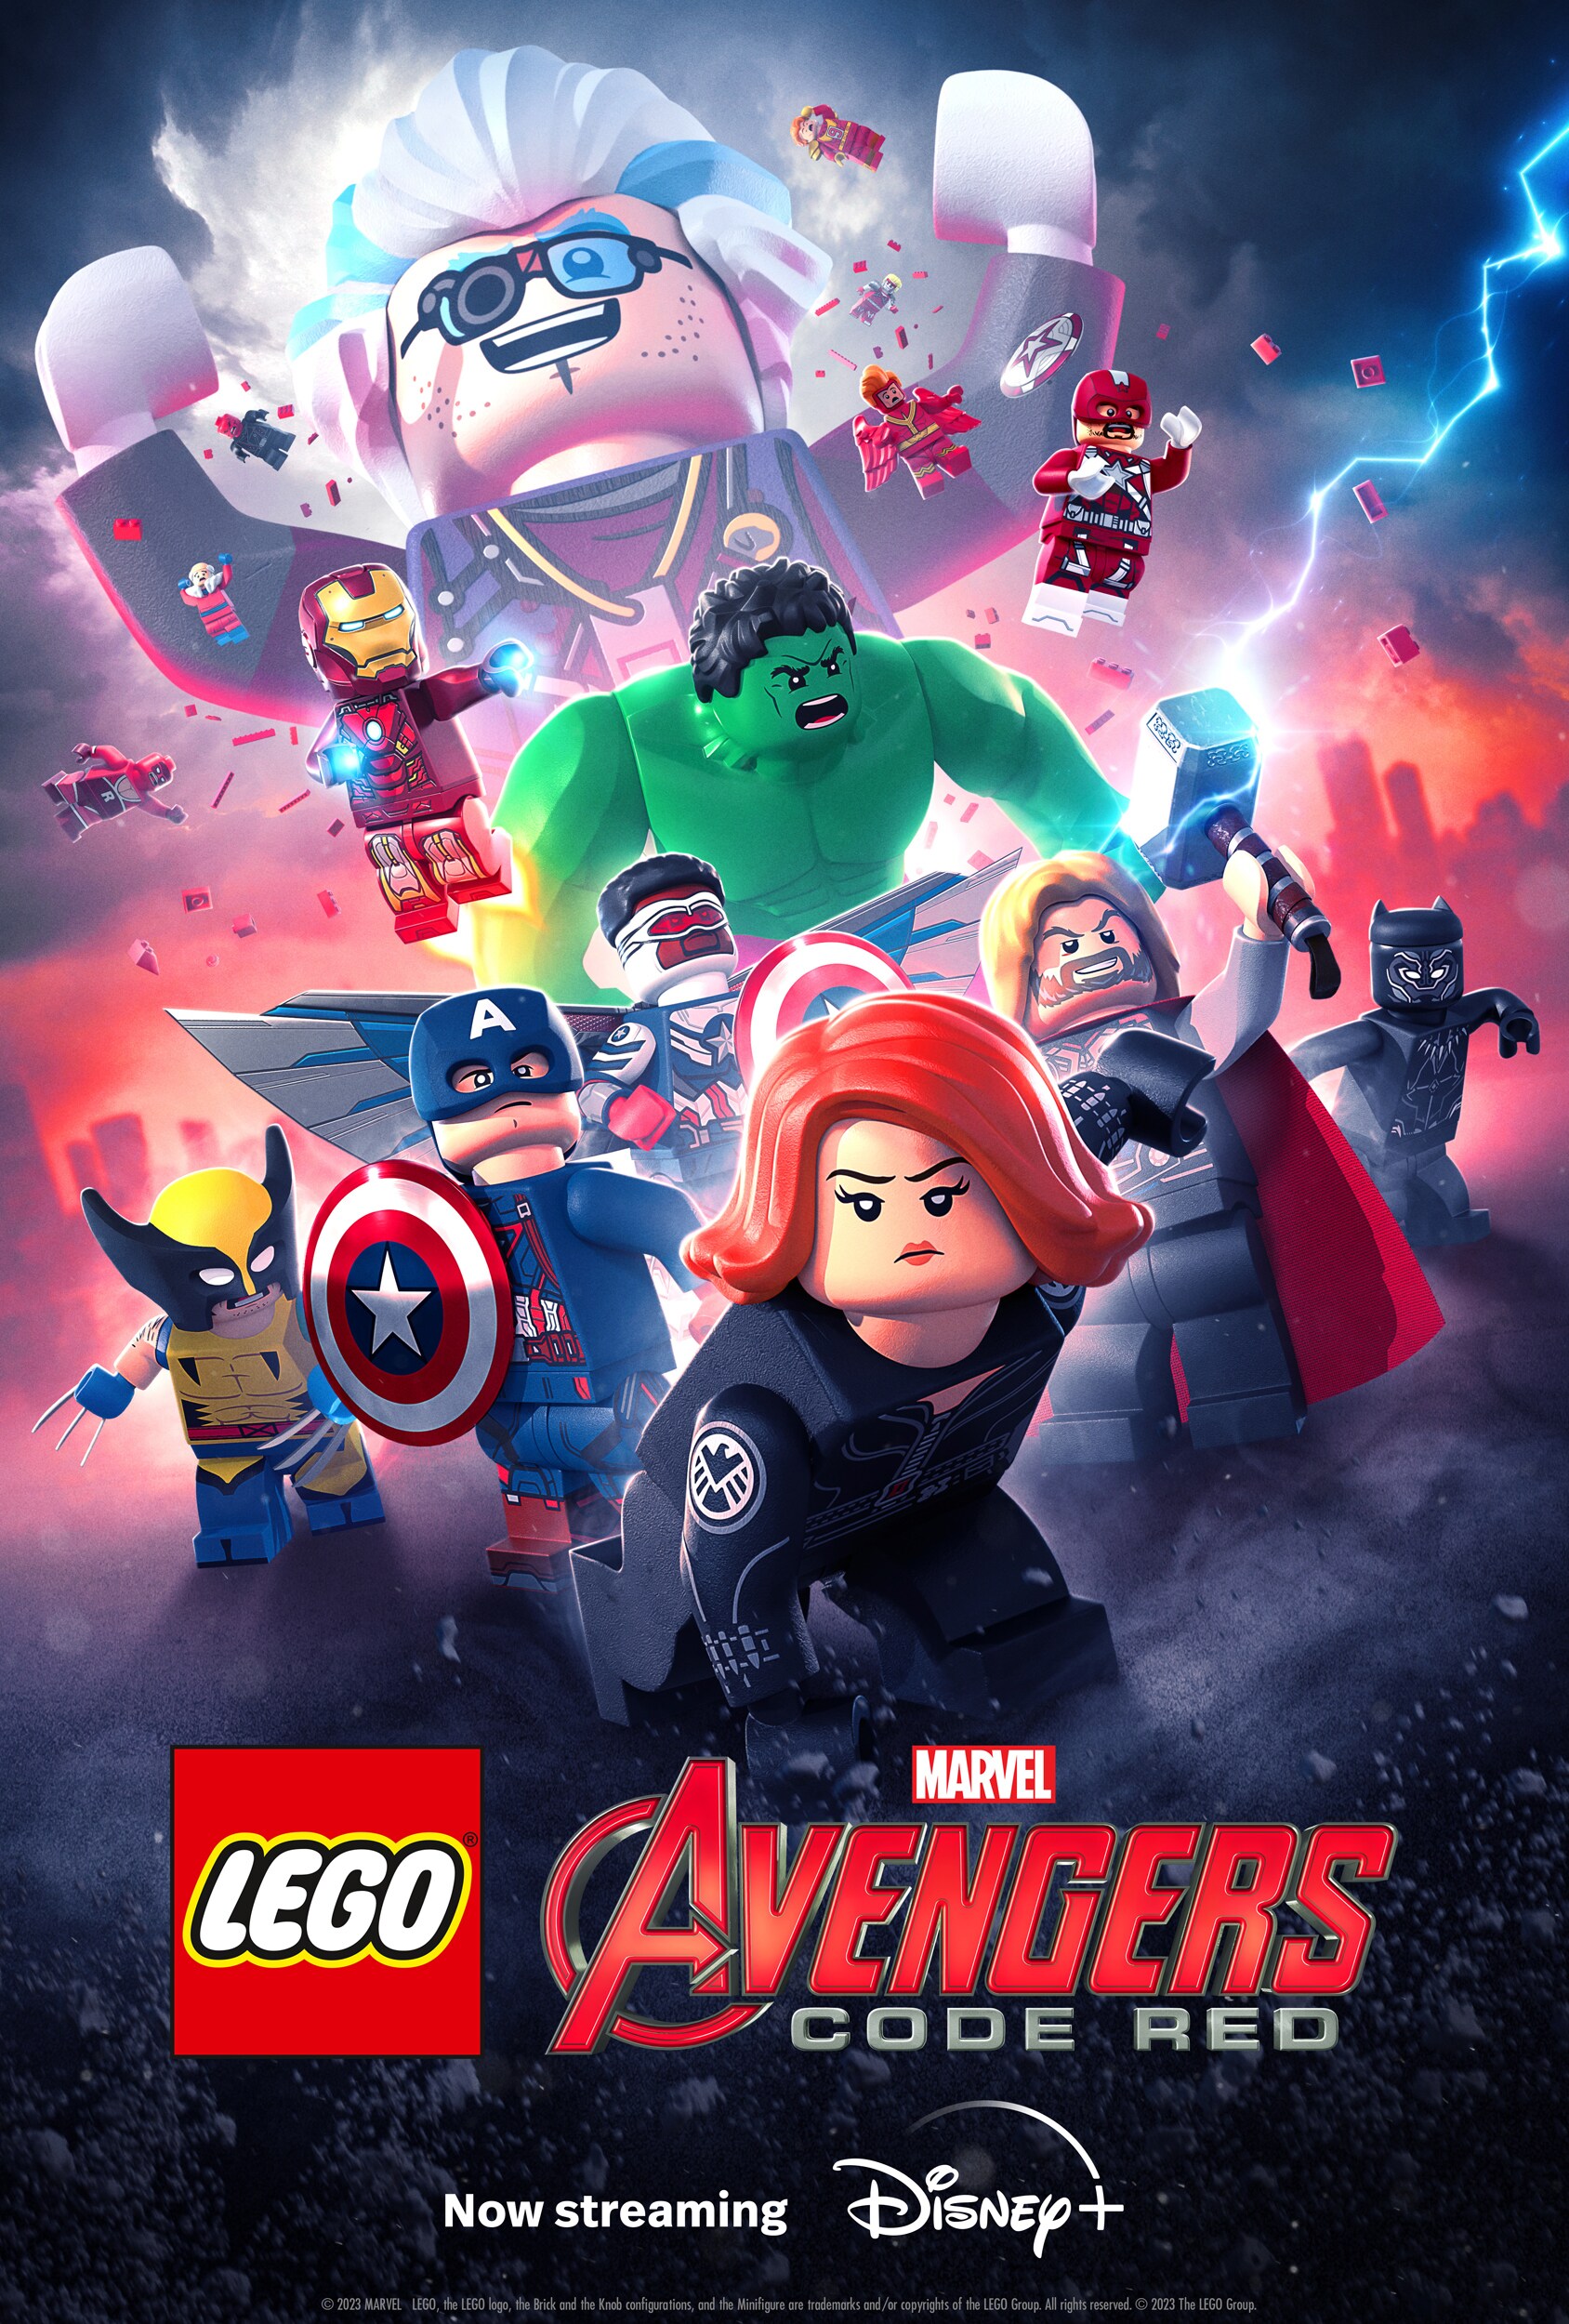 Marvel Studios’ “LEGO® Marvel Avengers Code Red” Now Streaming